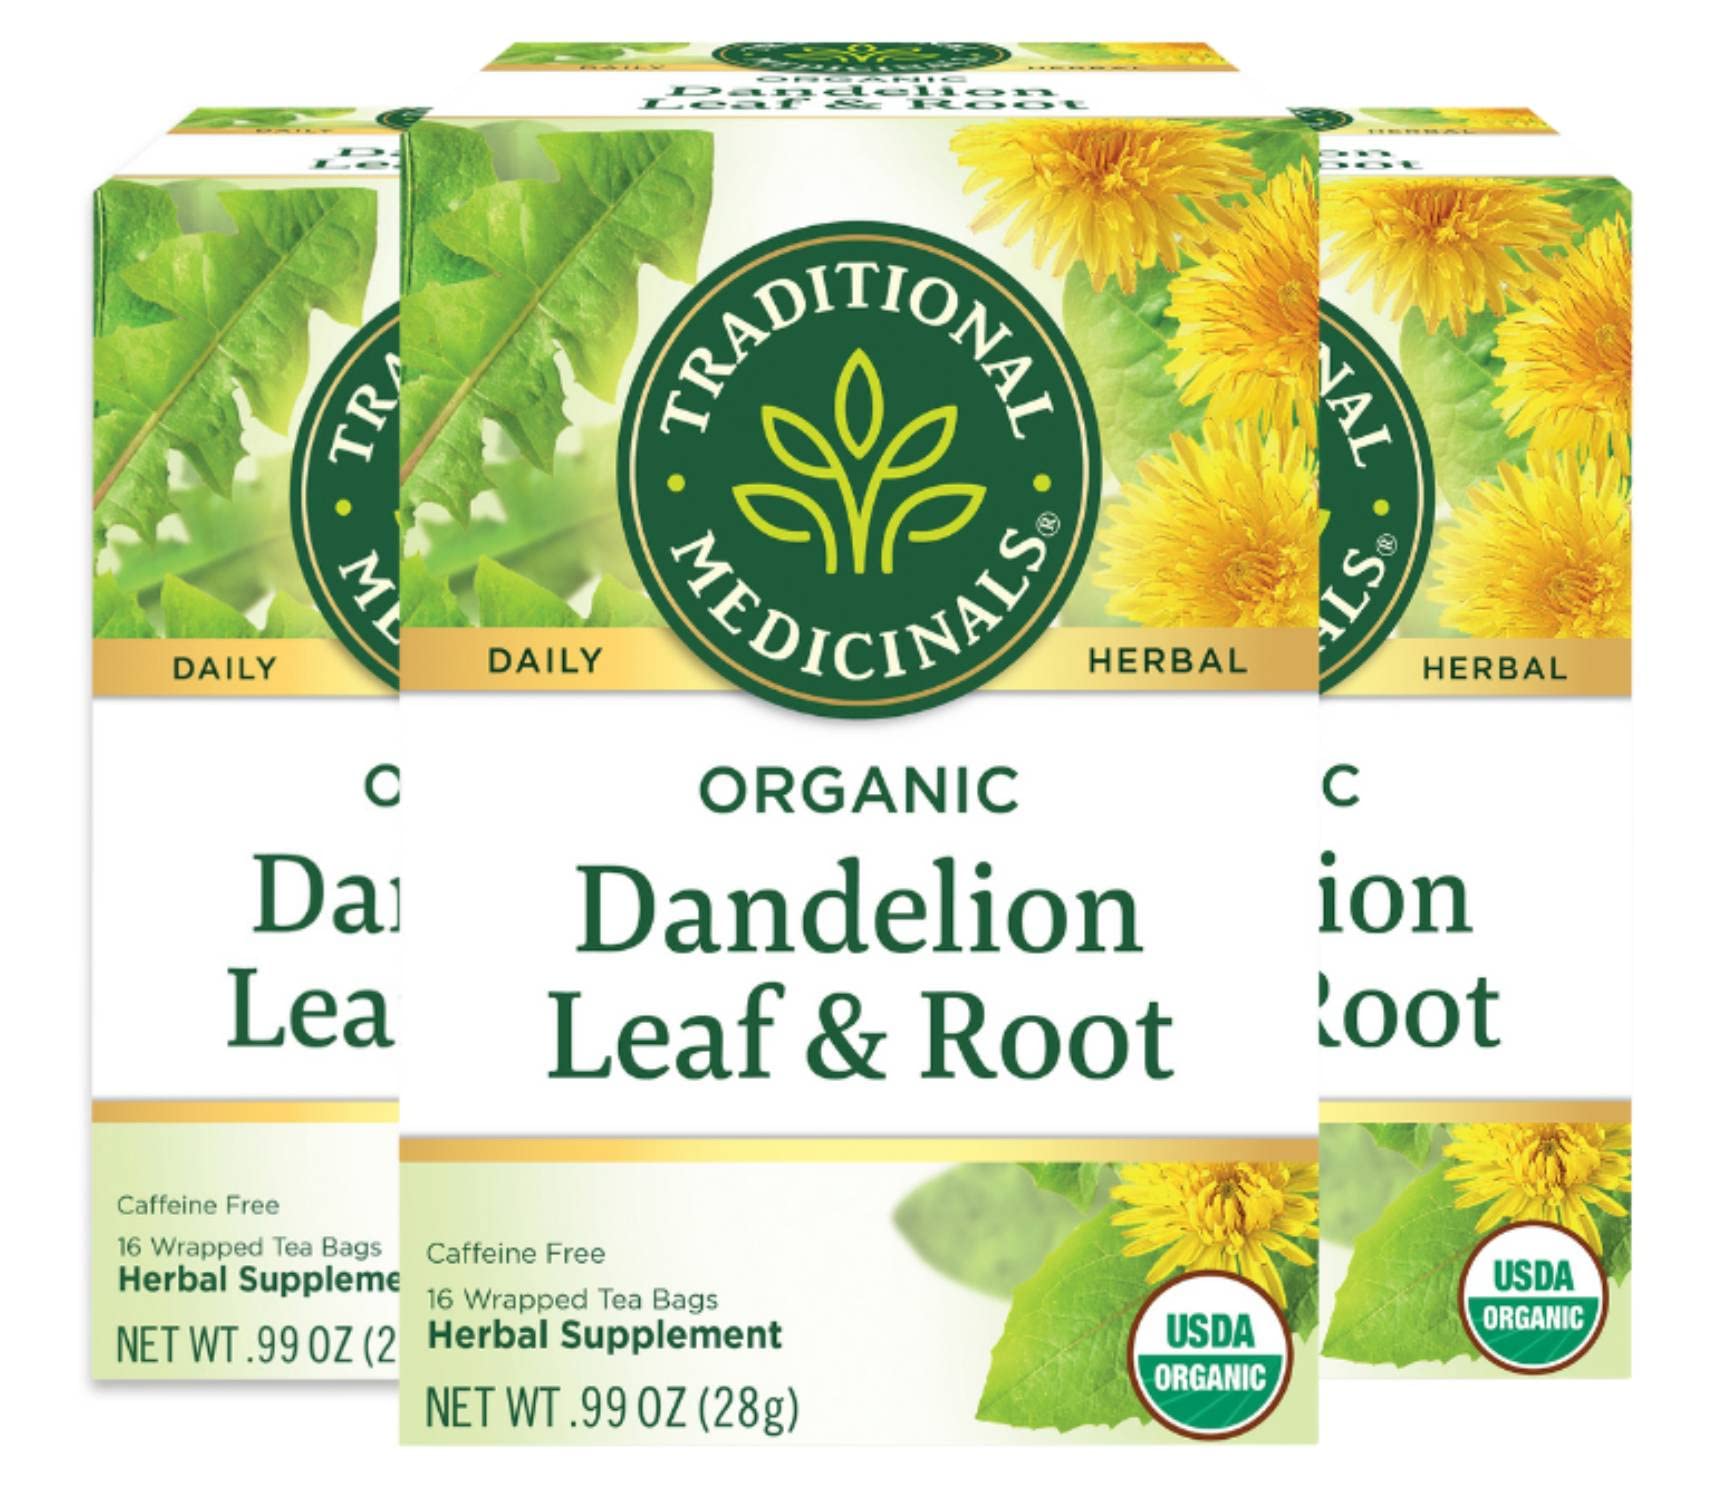 Traditional Medicinals Organic Dandelion Leaf & Root Herbal là sản phẩm y tế tiên tiến giúp cải thiện sức khỏe và tăng cường độ bền của cơ thể. Với thành phần hữu cơ và an toàn cho sức khỏe, sản phẩm được tin tưởng và sử dụng rộng rãi trên toàn cầu. Đến ngay để mua sản phẩm, bạn sẽ được trải nghiệm sự khỏe mạnh và sự tự tin toàn diện.